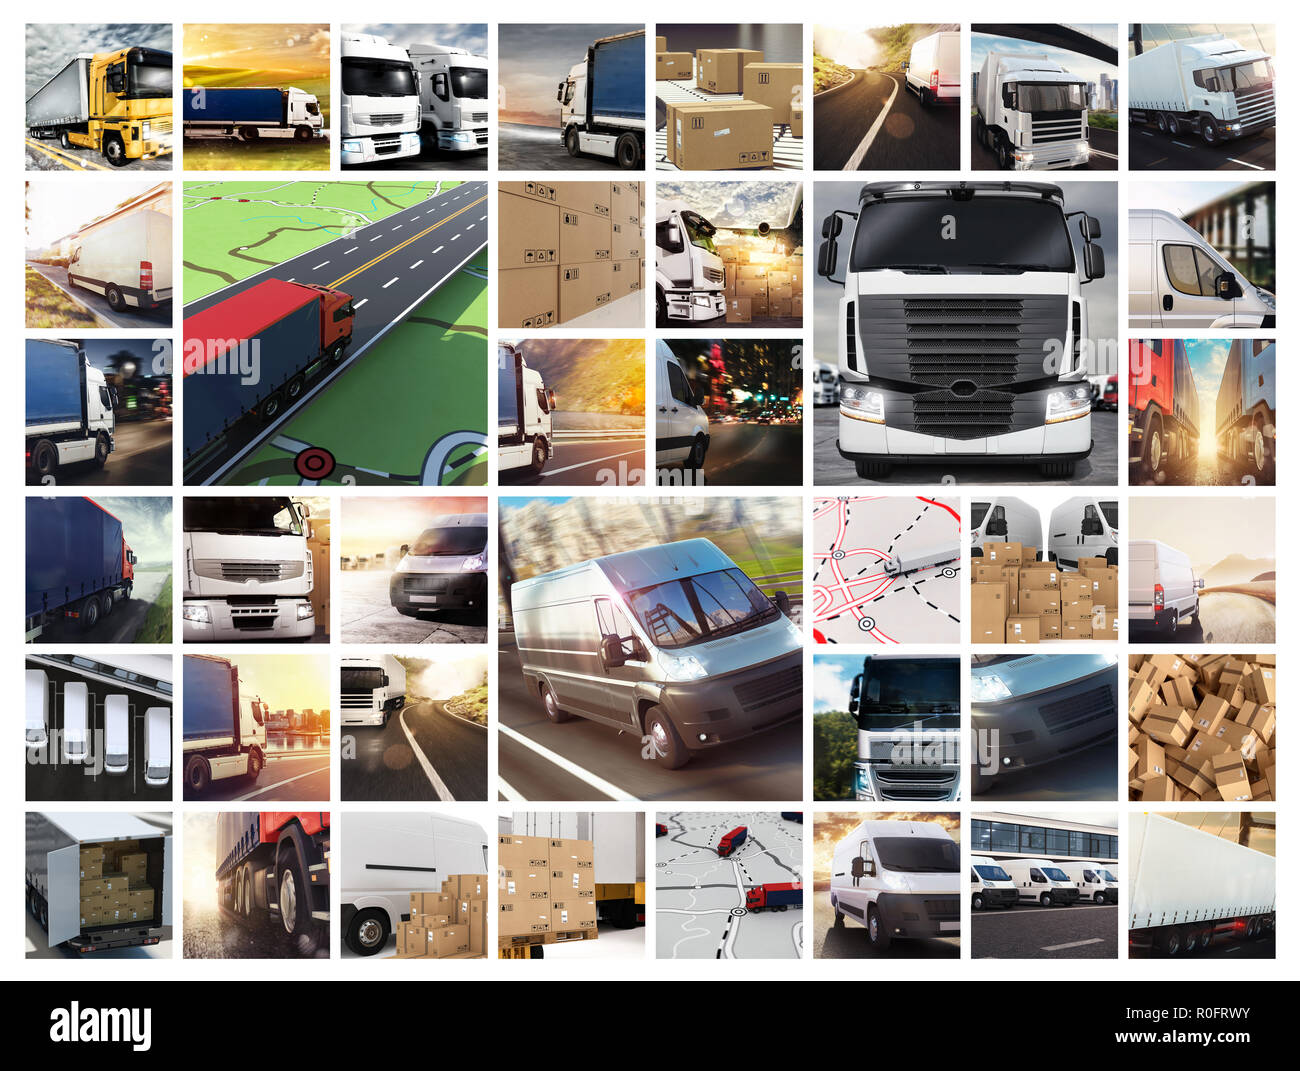 Composición Collage con furgonetas y camiones. Concepto de logística y transporte Foto de stock